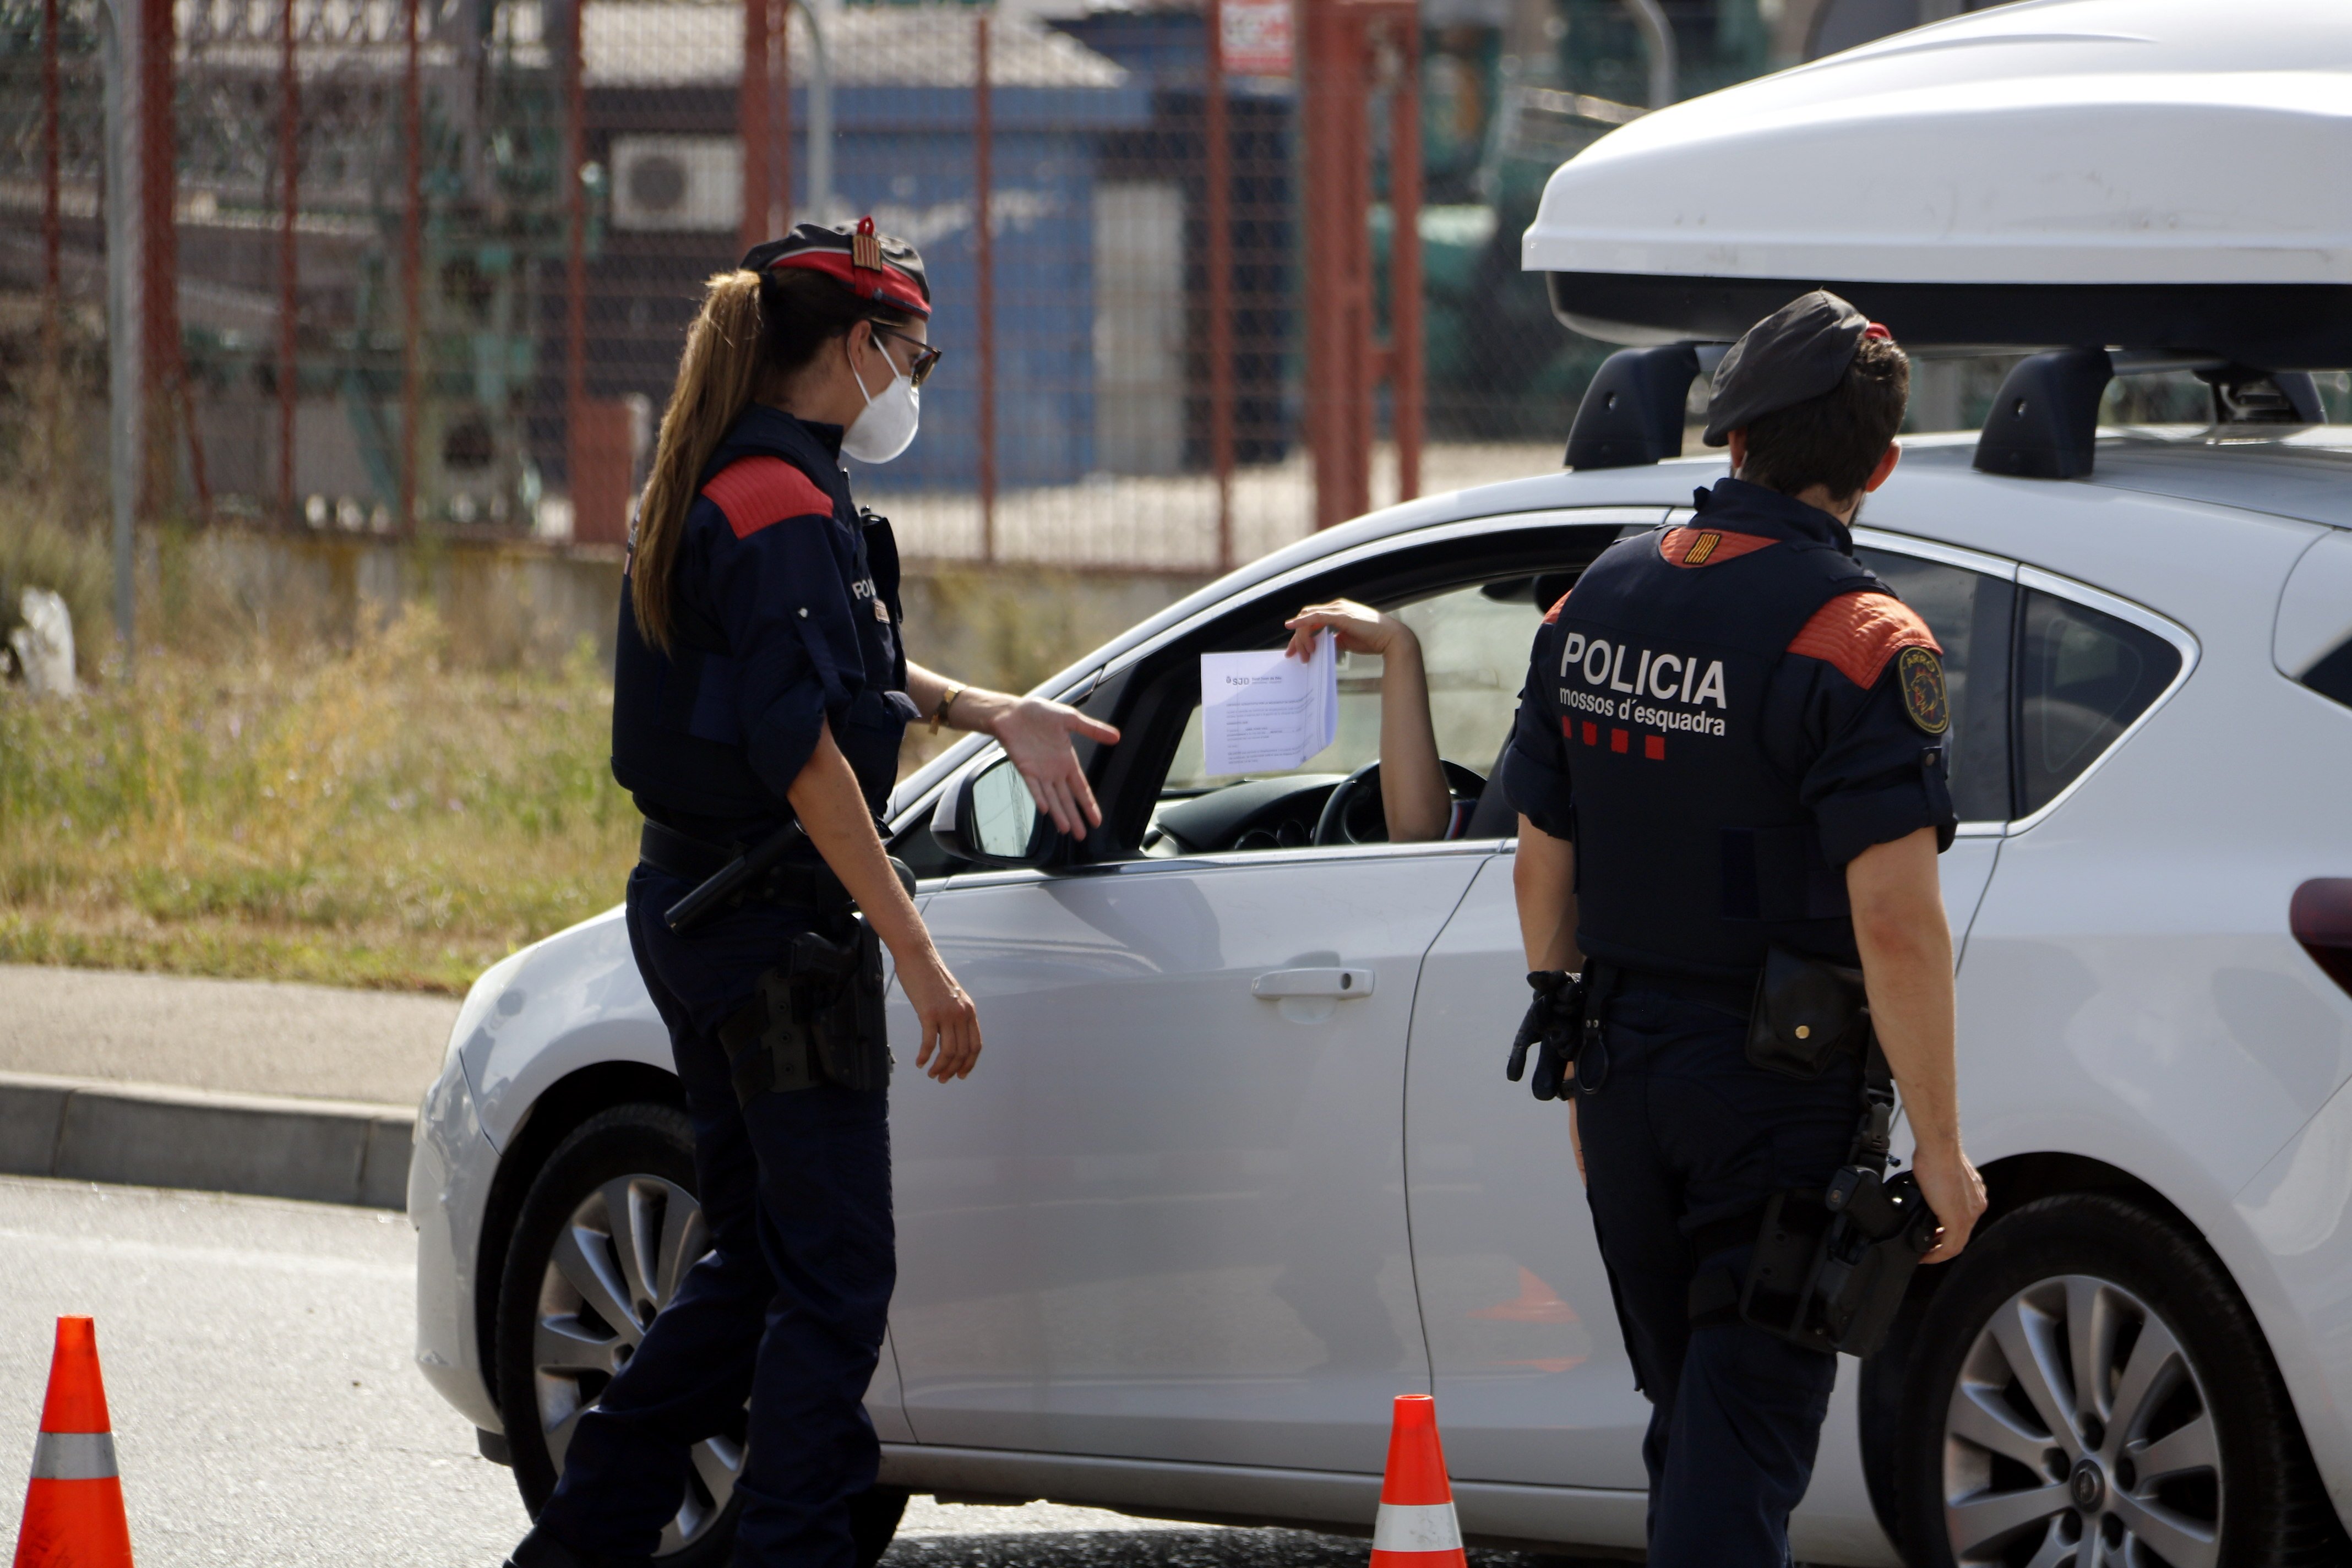 Raimat y Sucs quedan fuera de las restricciones de confinamiento de Lleida